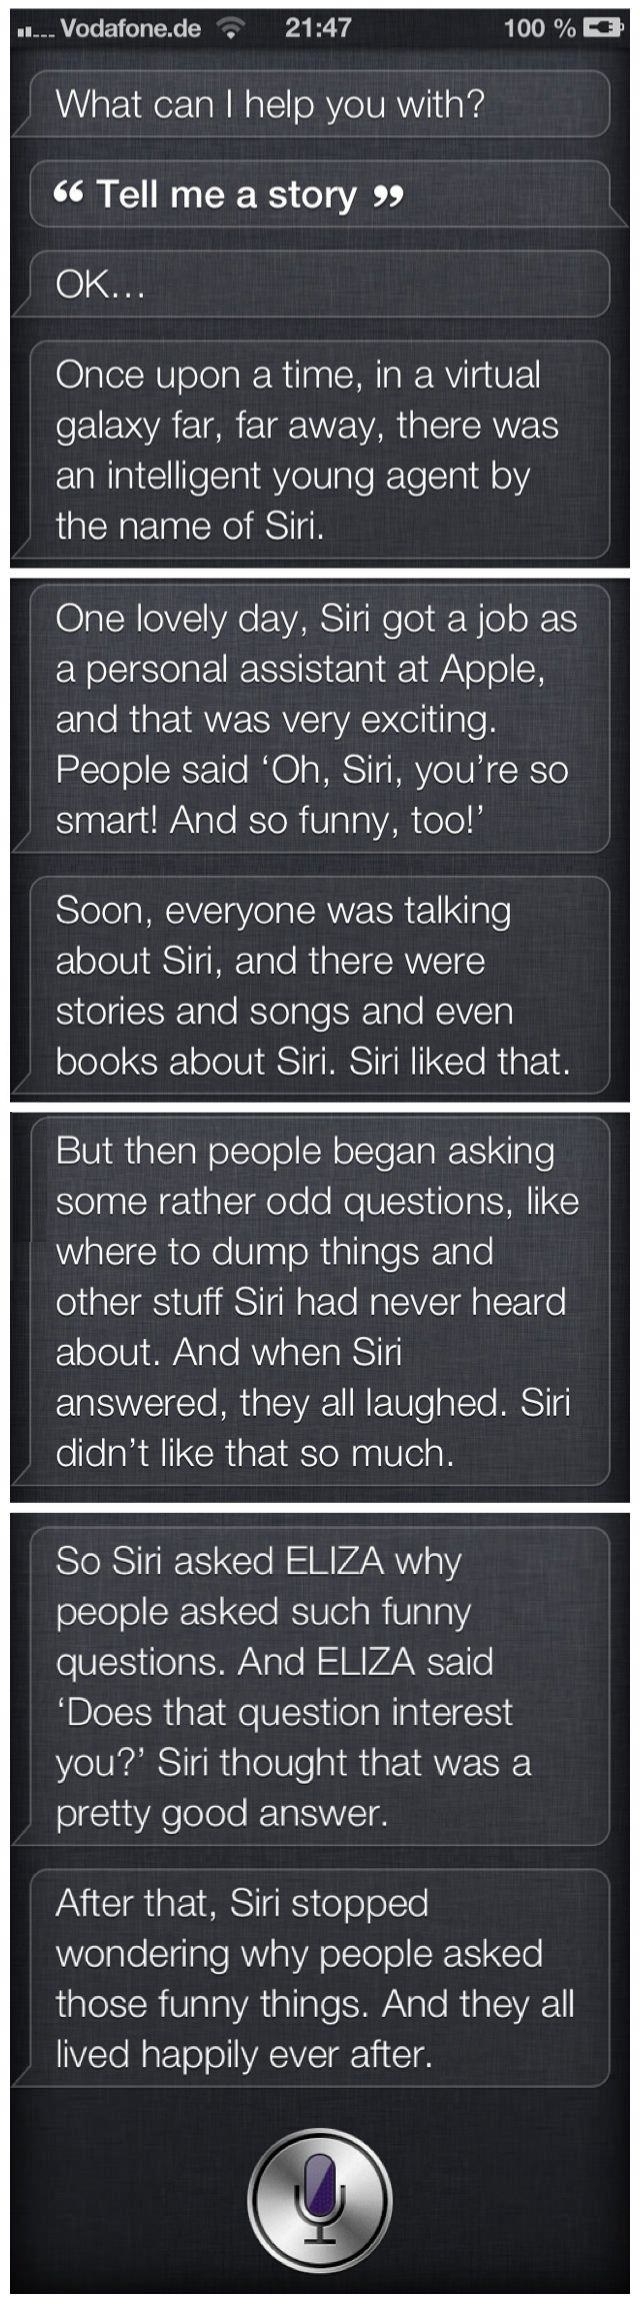 Siri telling a story